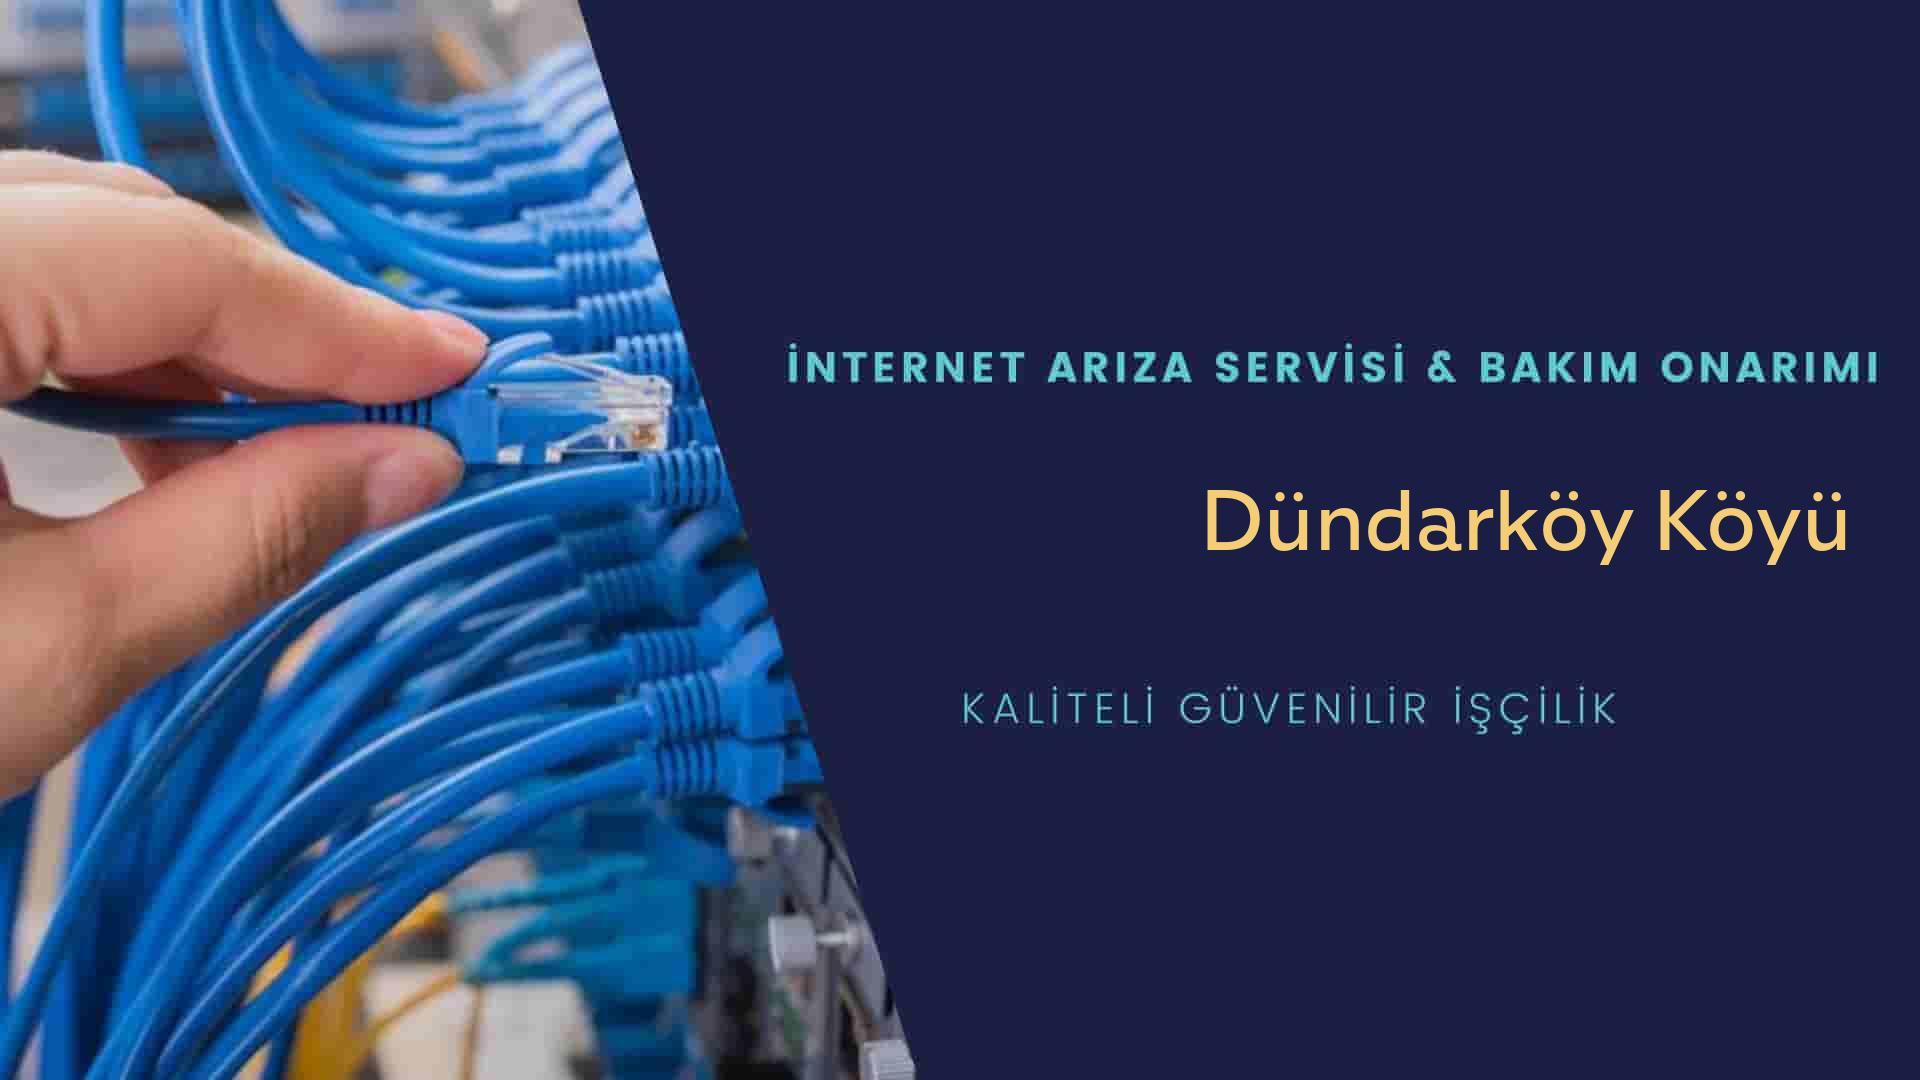 Dündarköy Köyü internet kablosu çekimi yapan yerler veya elektrikçiler mi? arıyorsunuz doğru yerdesiniz o zaman sizlere 7/24 yardımcı olacak profesyonel ustalarımız bir telefon kadar yakındır size.